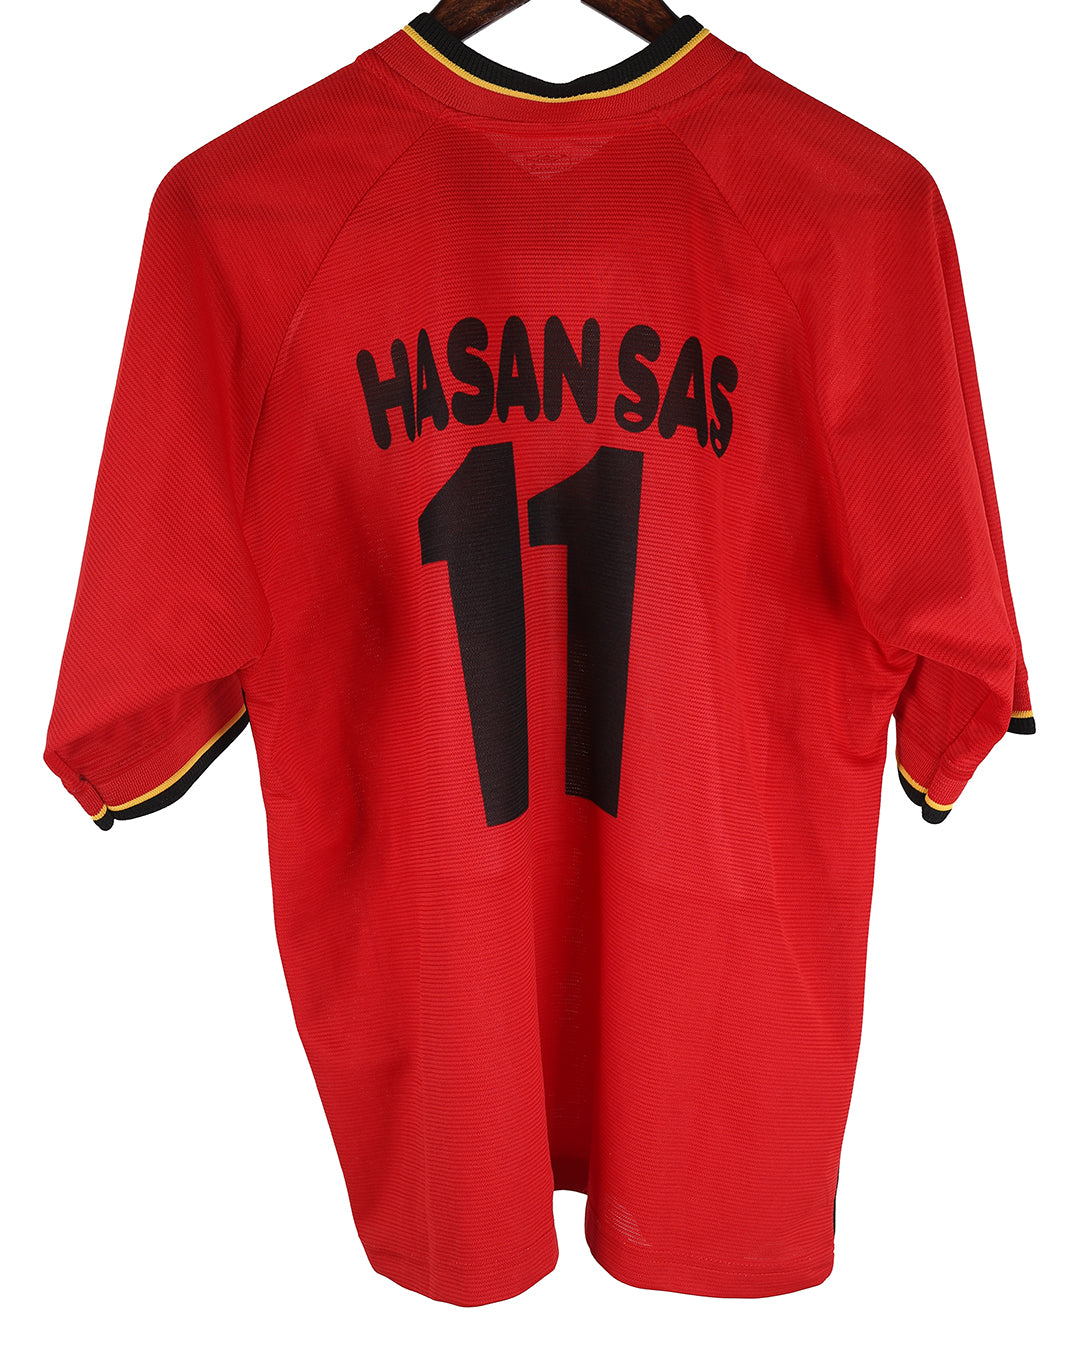 Hasan Sas #11 Galatasaray Third Football Jersey - 2001/2002